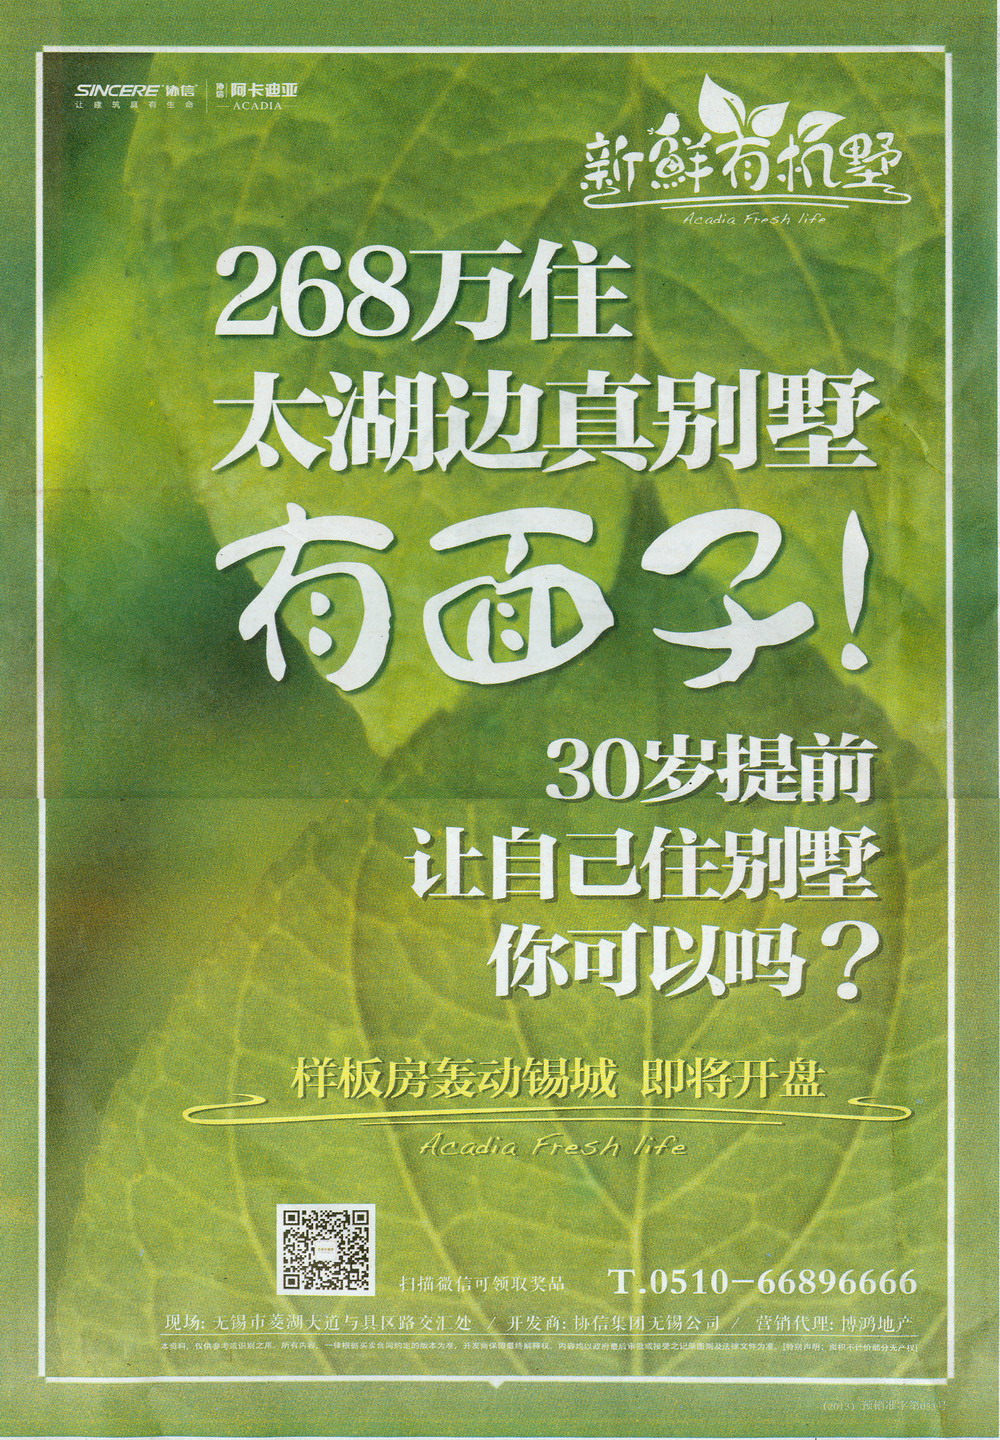 报纸广告 2013-10-24 江南晚报 B15   